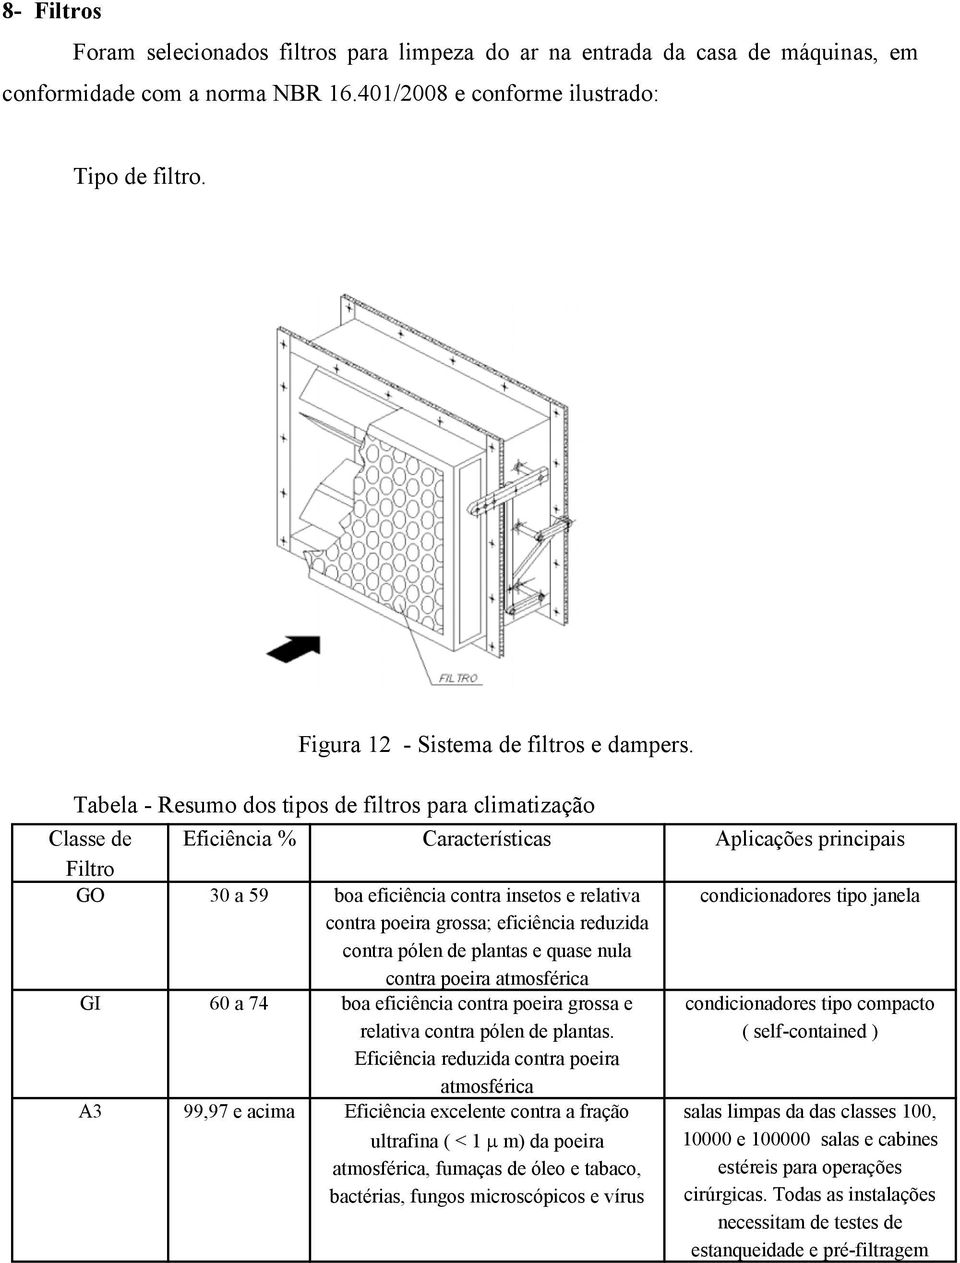 Tabela - Resumo dos tipos de filtros para climatização Classe de Filtro Eficiência % Características Aplicações principais GO 30 a 59 condicionadores tipo janela GI 60 a 74 A3 99,97 e acima boa